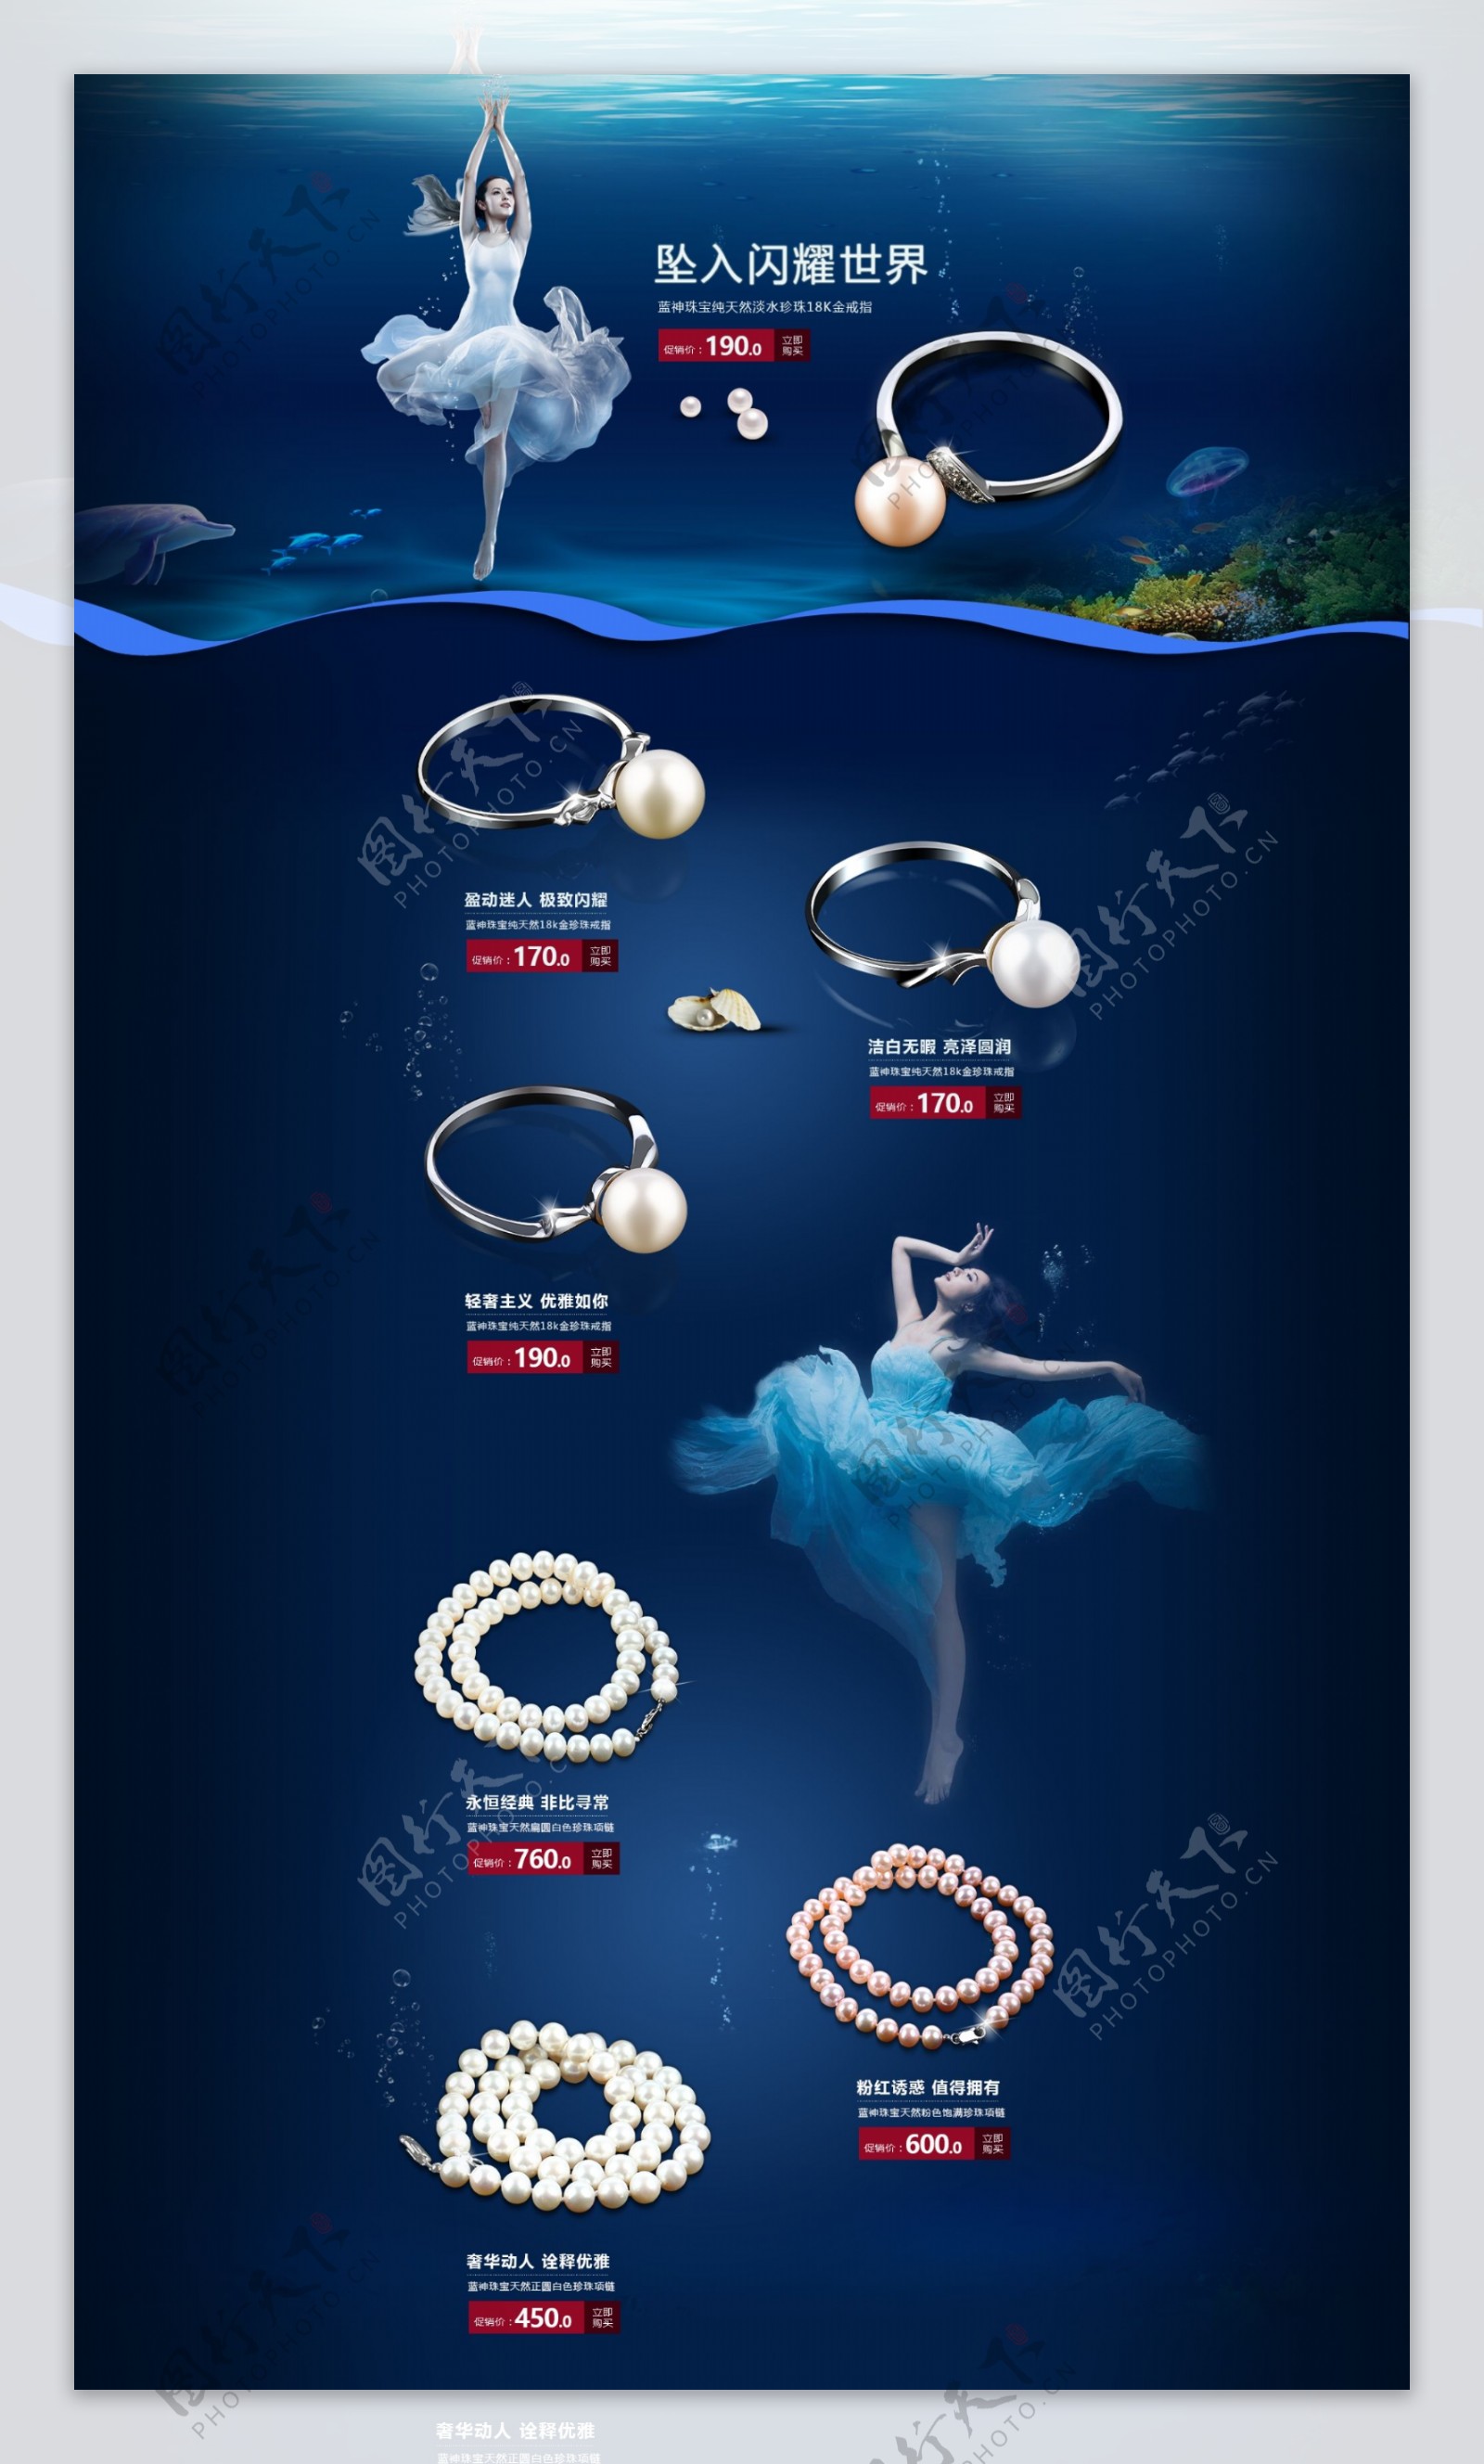 淘宝珍珠饰品专题页面图片